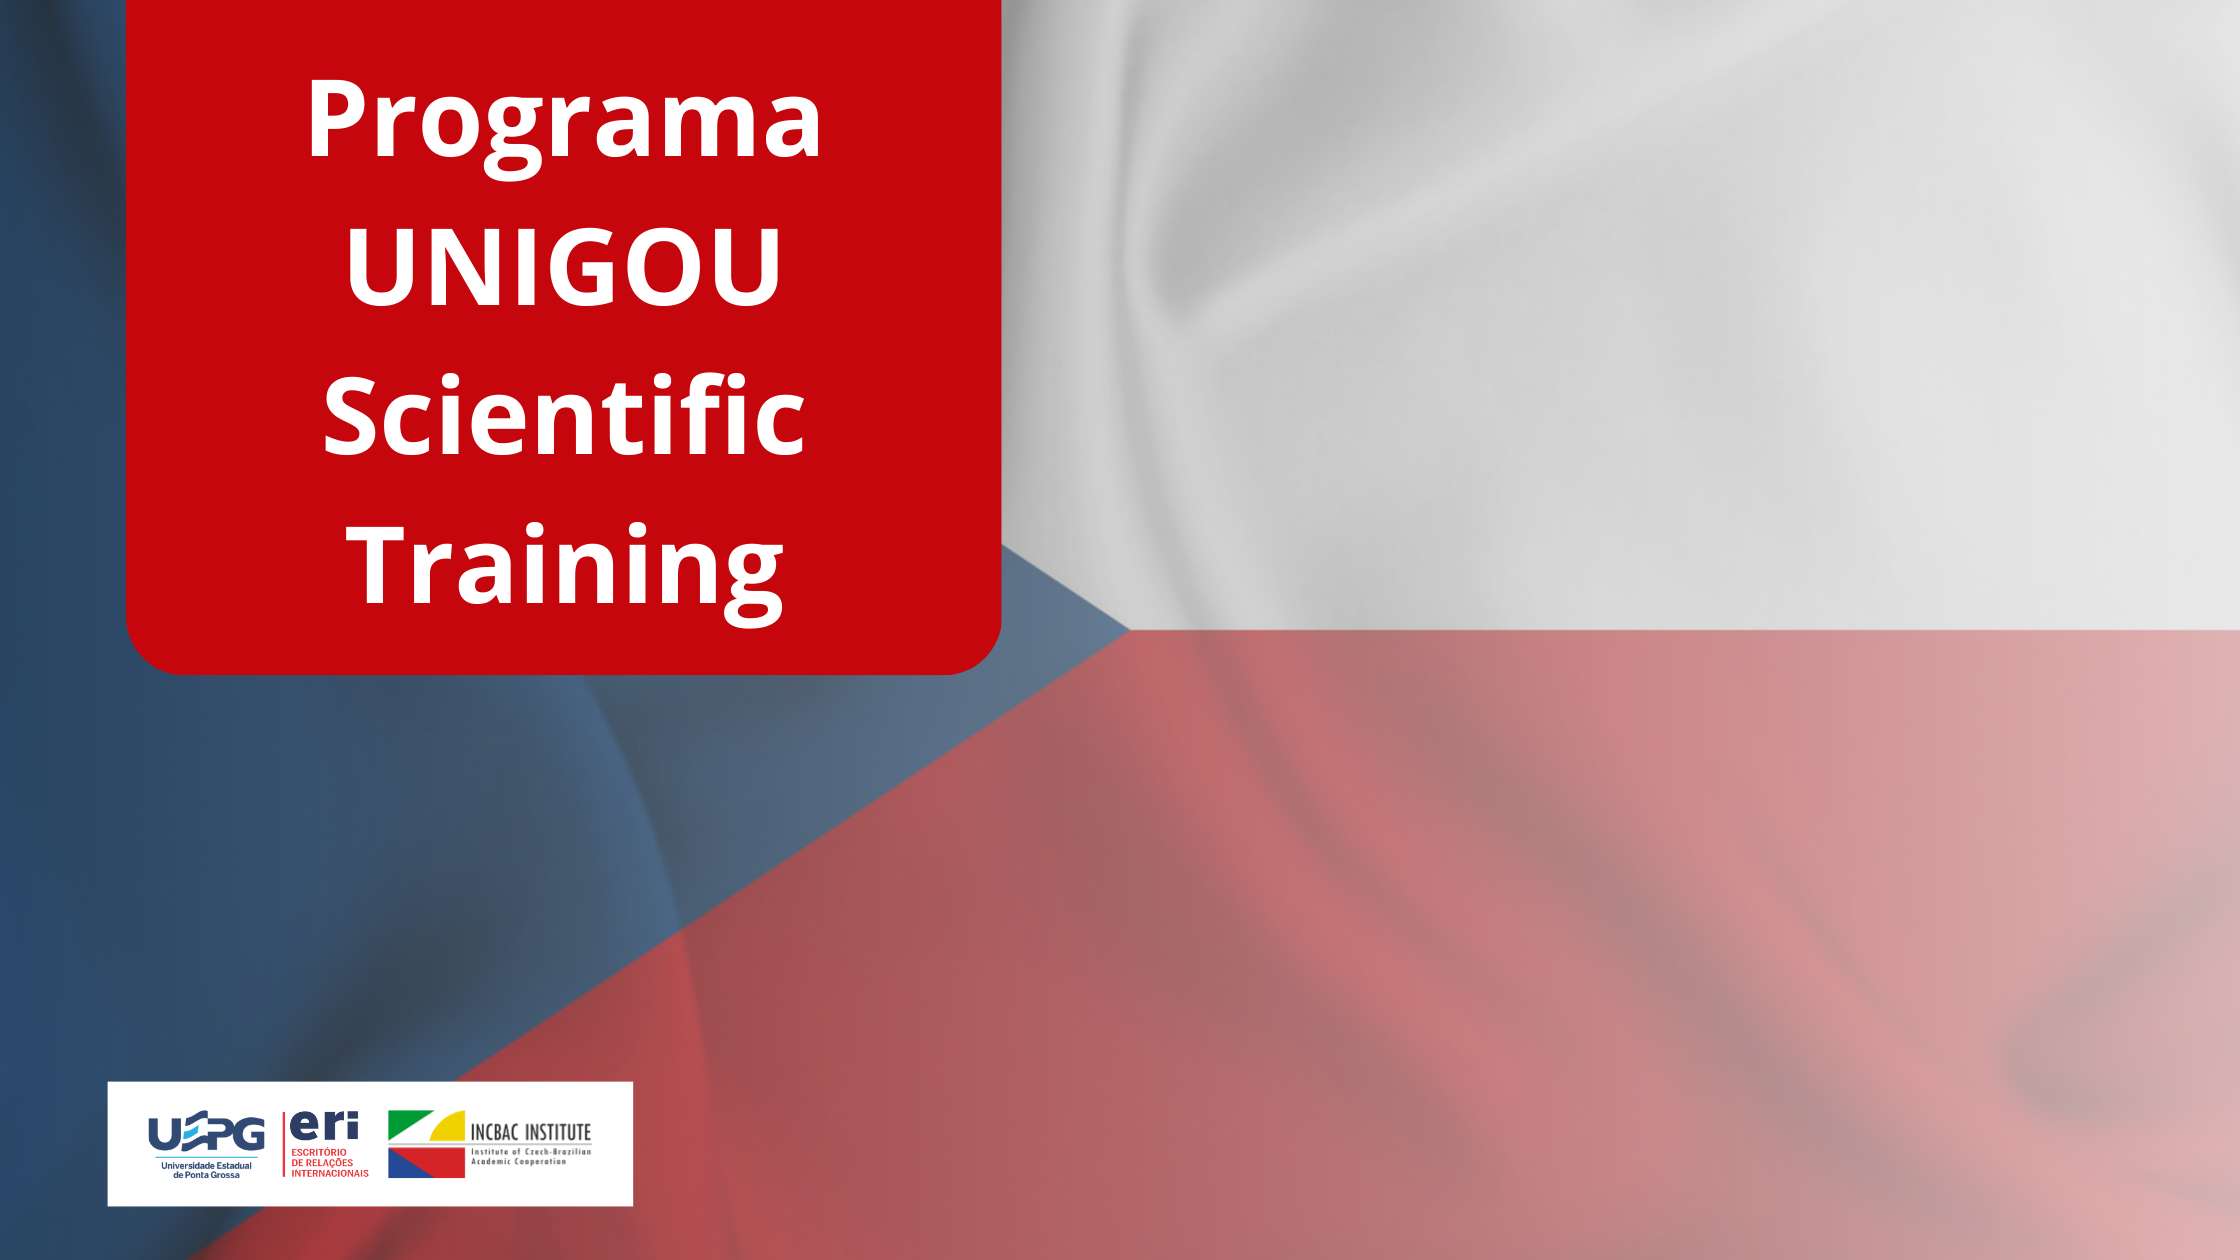 Programa UNIGOU Scientific Training